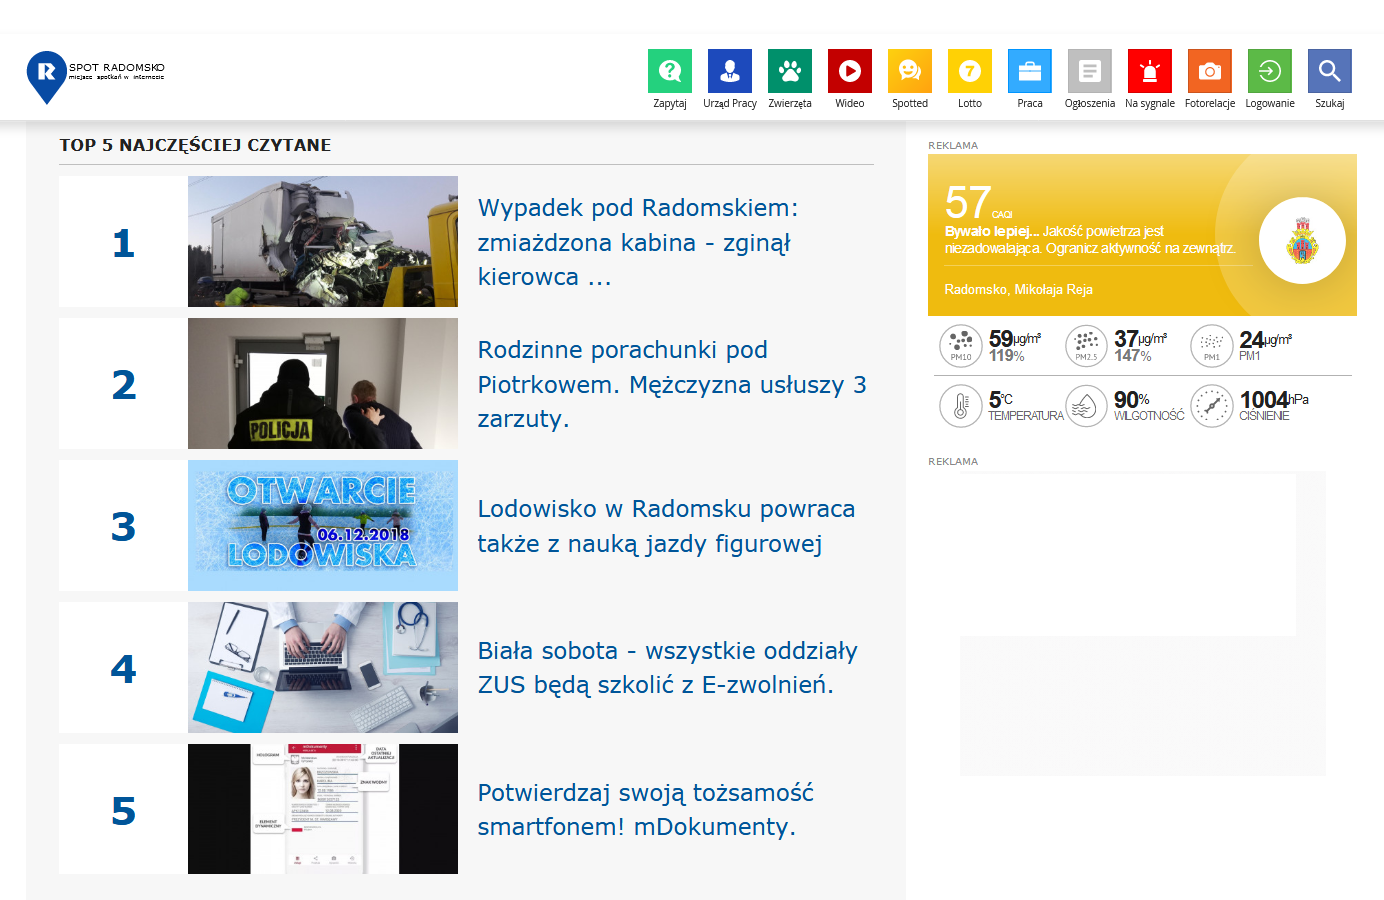 Na podstronach portalu spotradomsko.pl są już dostępne widgety prezentujące aktualny stan powietrza w Radomsku.